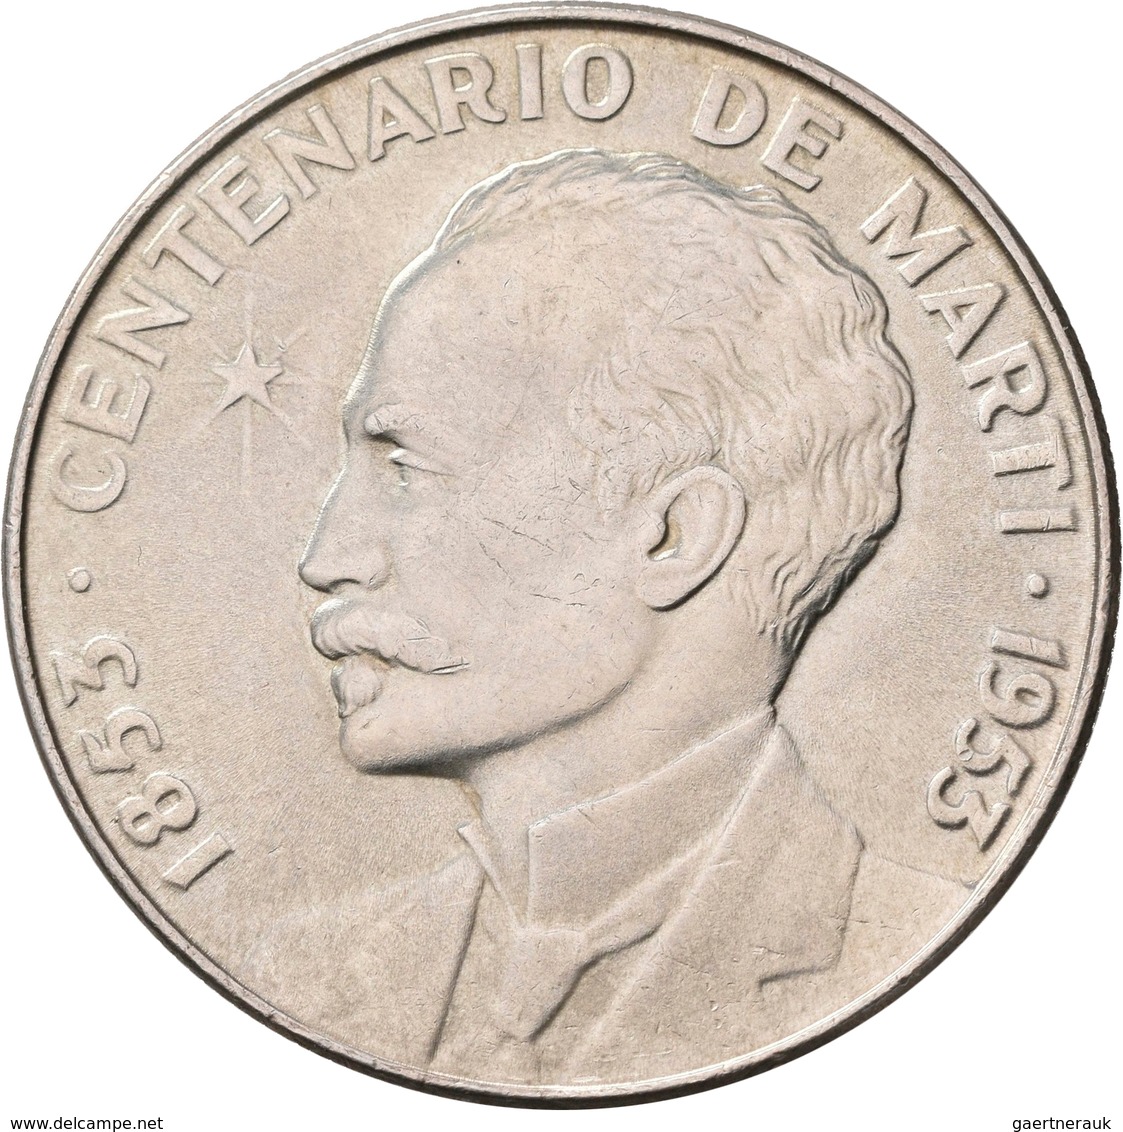 Kuba: Lot 4 Stück; Peso 1915, 1934, 1934, 1953, Sehr Schön-vorzüglich, Vorzüglich, Stempelglanz. - Cuba